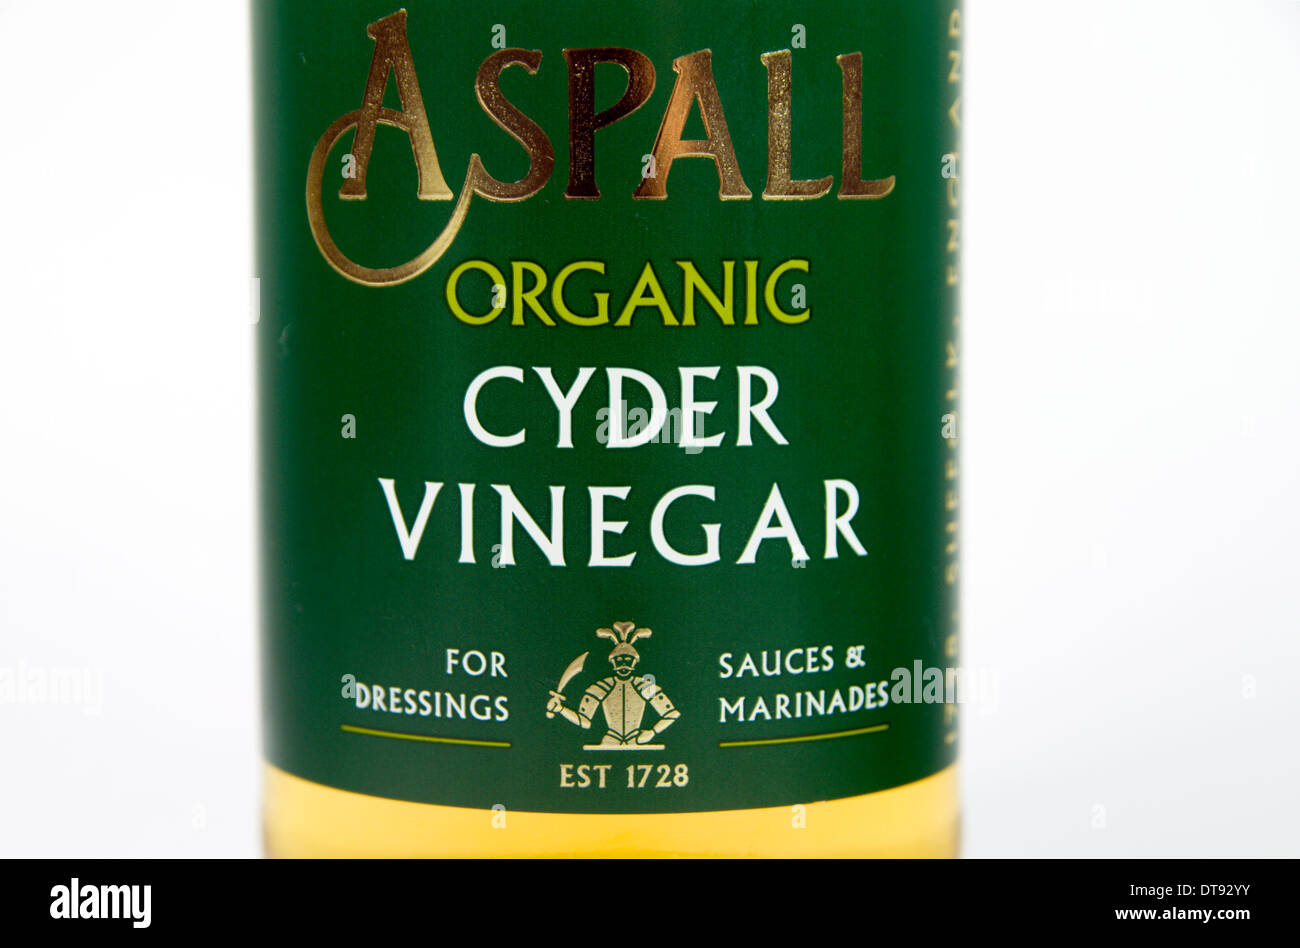 Cyder vinegar bottle Stock Photo